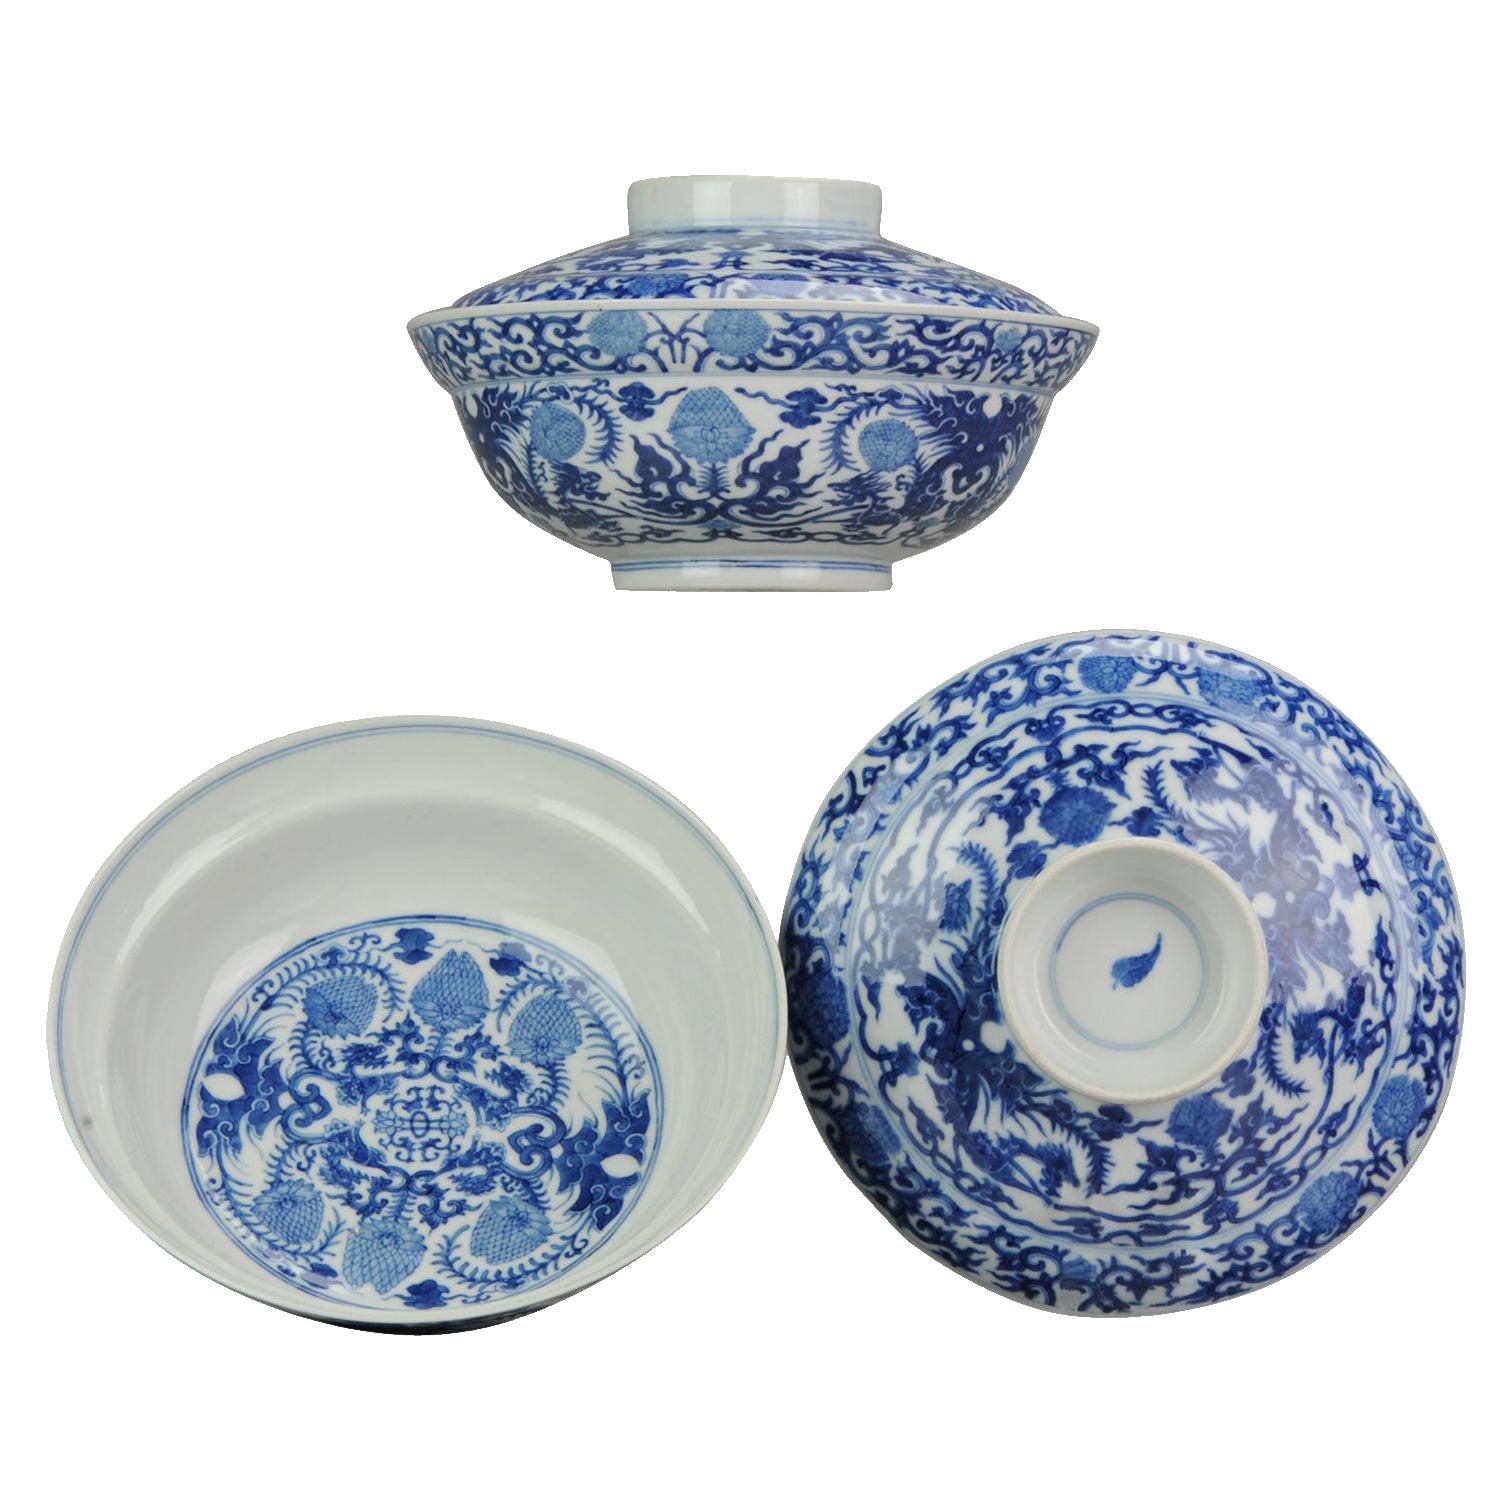 Bols en porcelaine chinoise anciens du 19ème siècle de la période Guangxu, marché asiatique de l'Asie